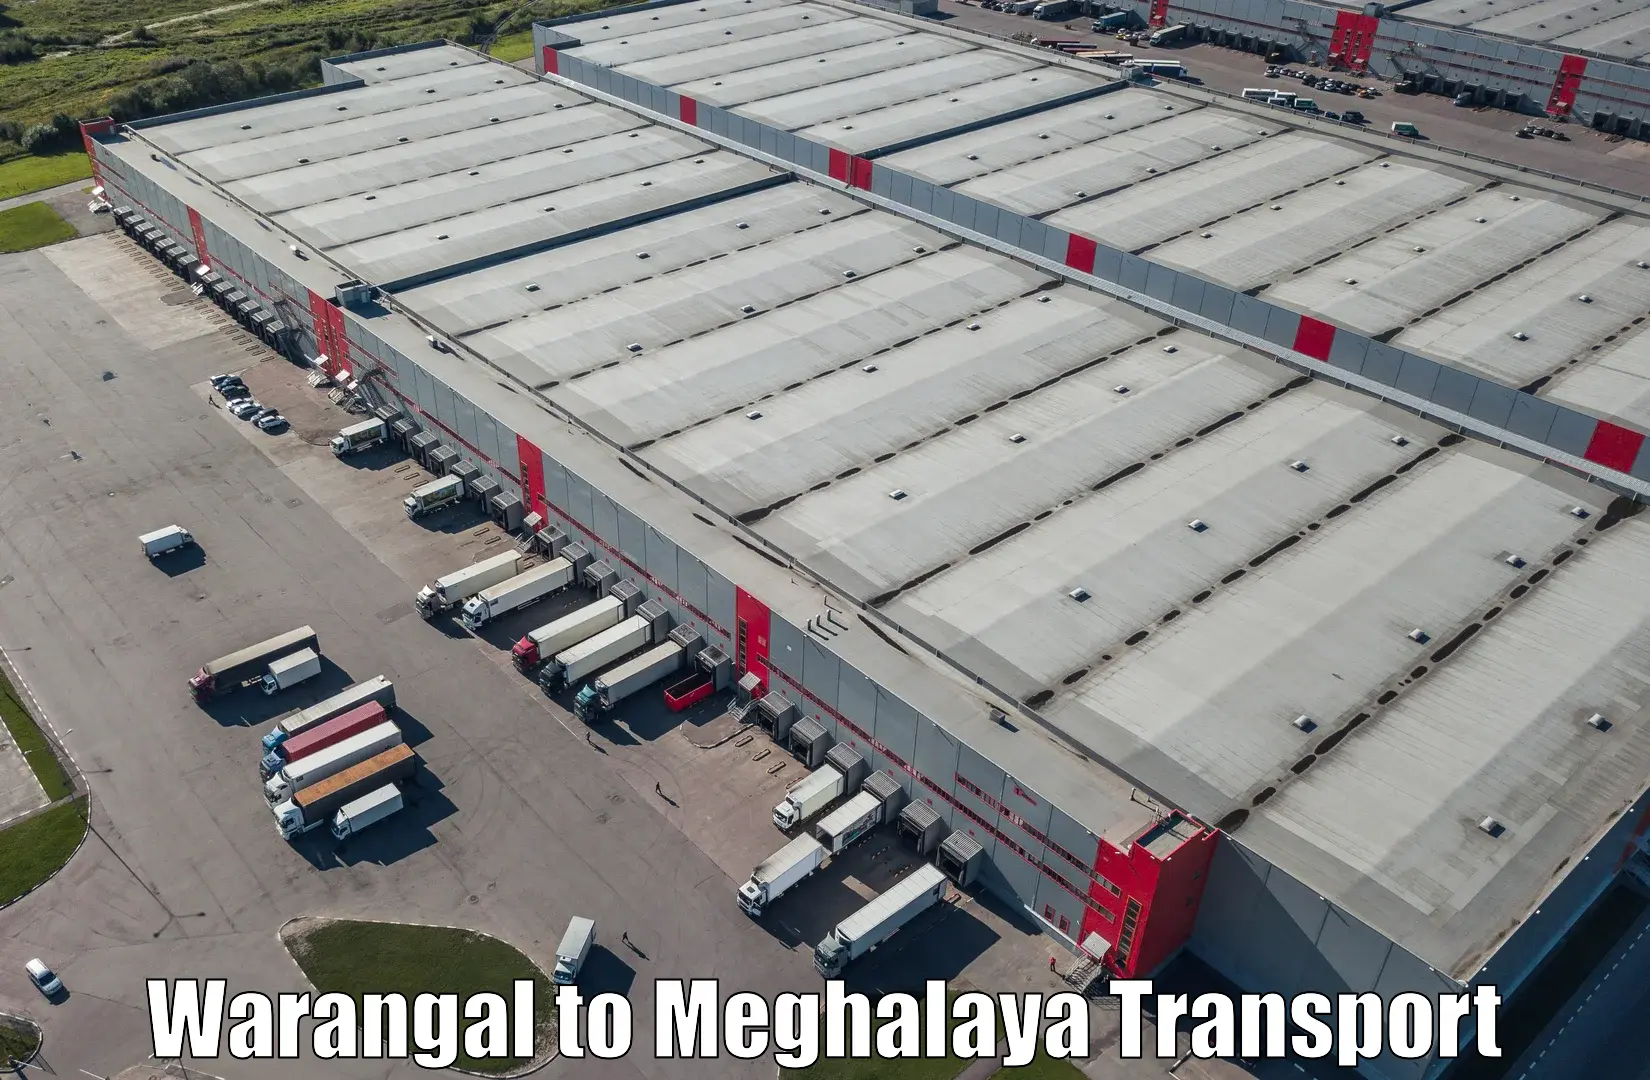 Transport in sharing in Warangal to NIT Meghalaya